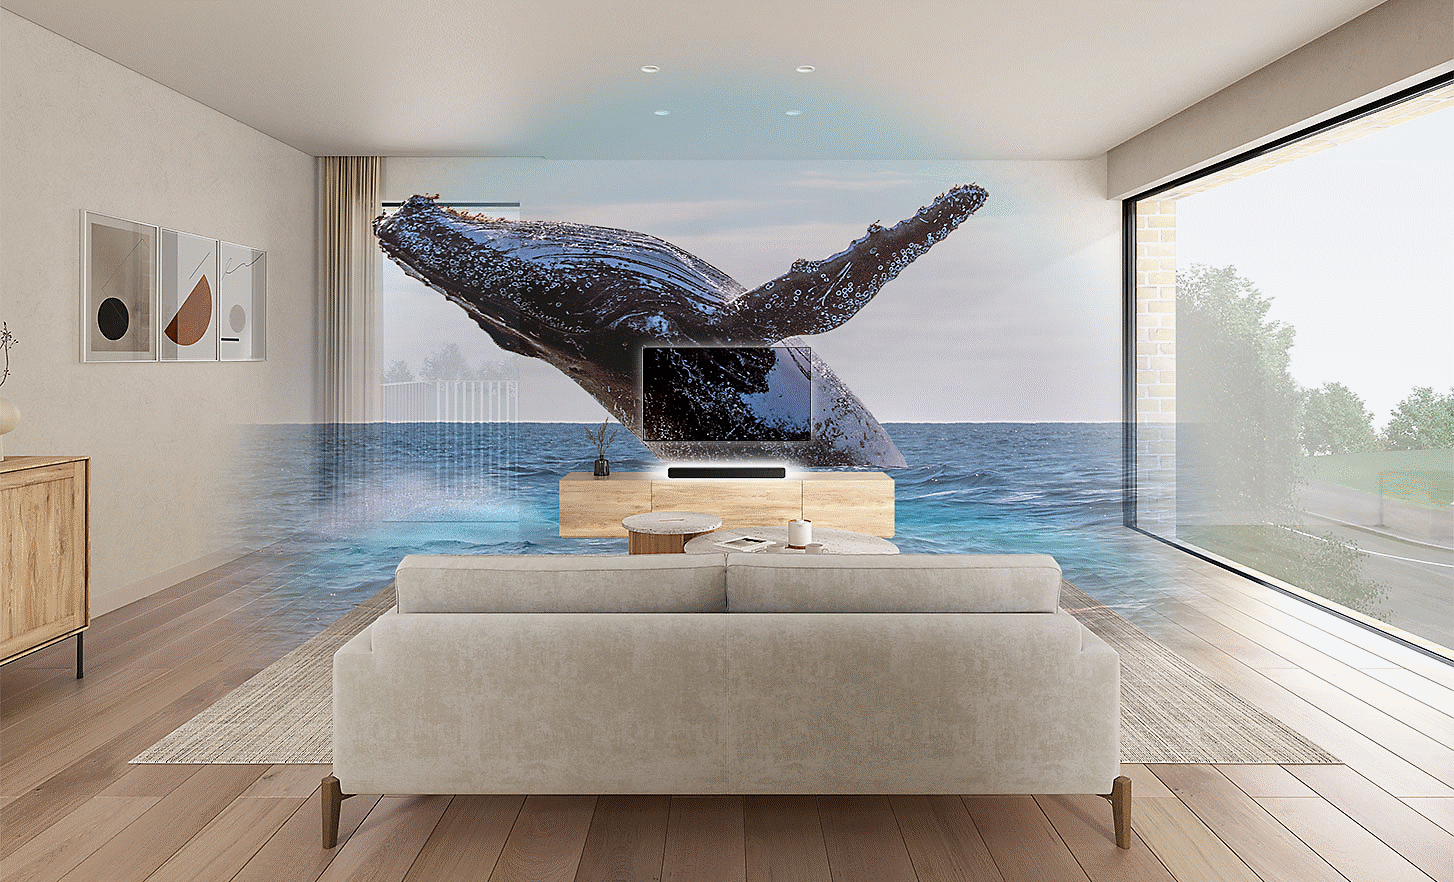 Hình ảnh phòng khách với TV và loa thanh HT-S2000 ở giữa, hình ảnh chú cá voi in chìm ngồi bên trên